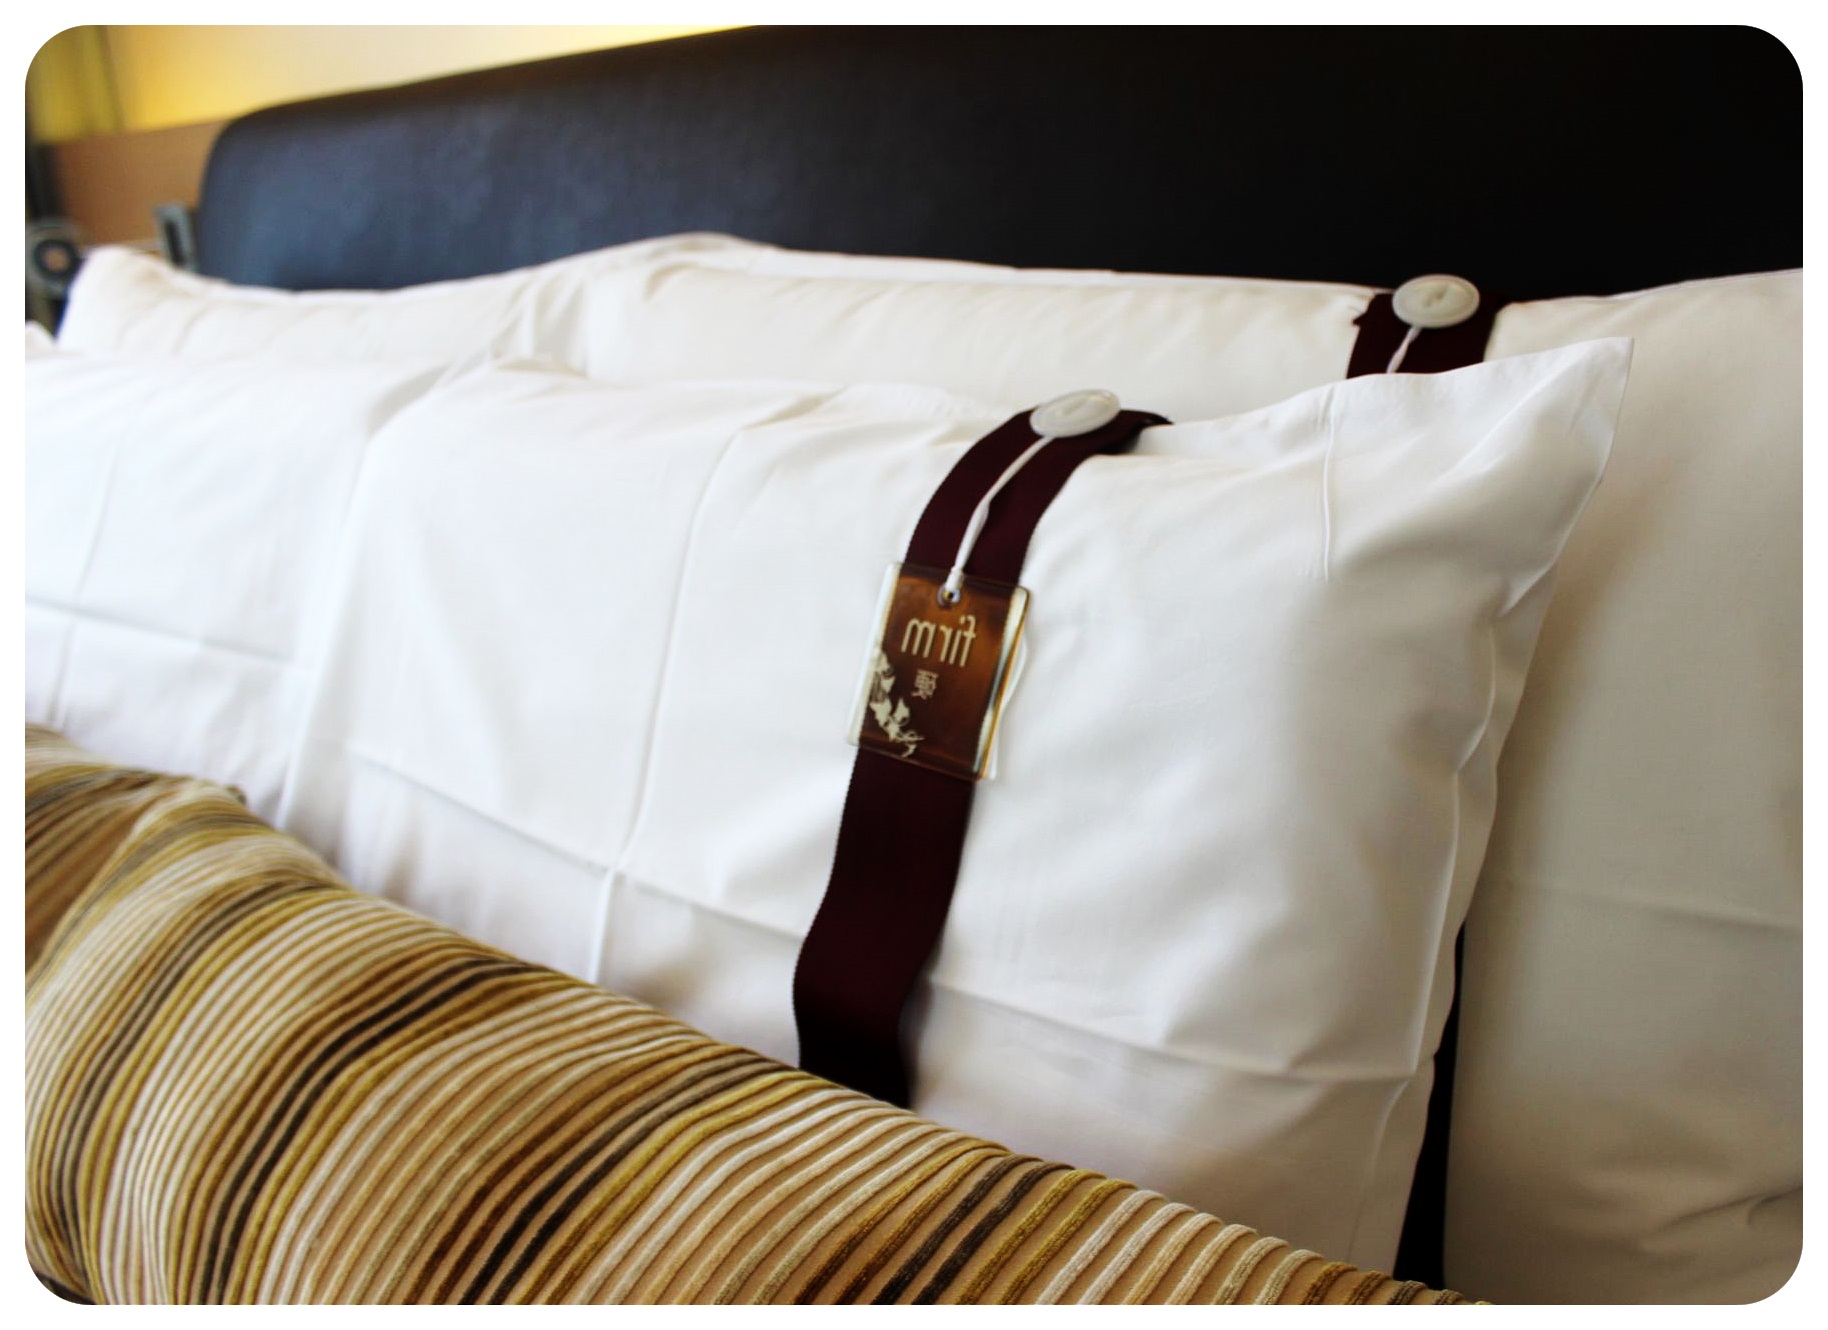 LKF hotel Hong Kong pillows